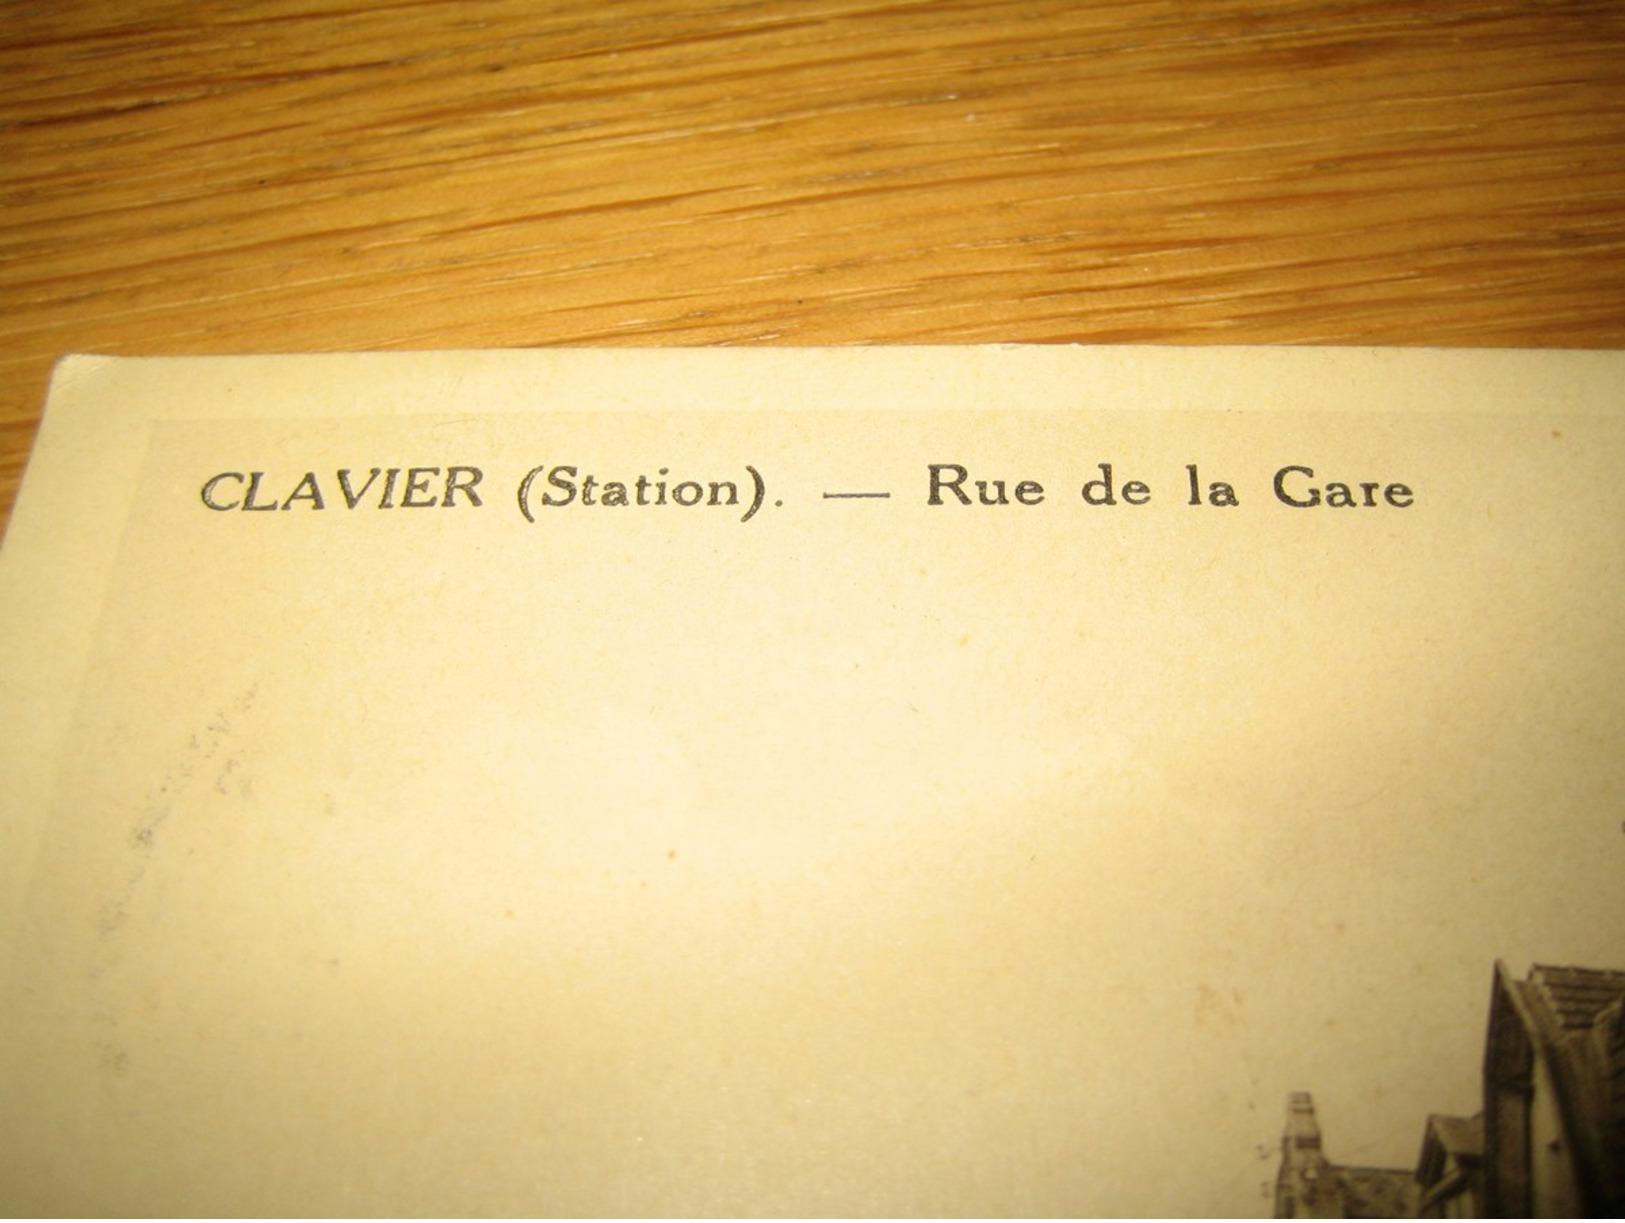 CLAVIER  (Station)  Rue De La Gare    "Boulangerie-Pâtisserie  Robert Olivier"   Pub  Piedboeuf - Clavier